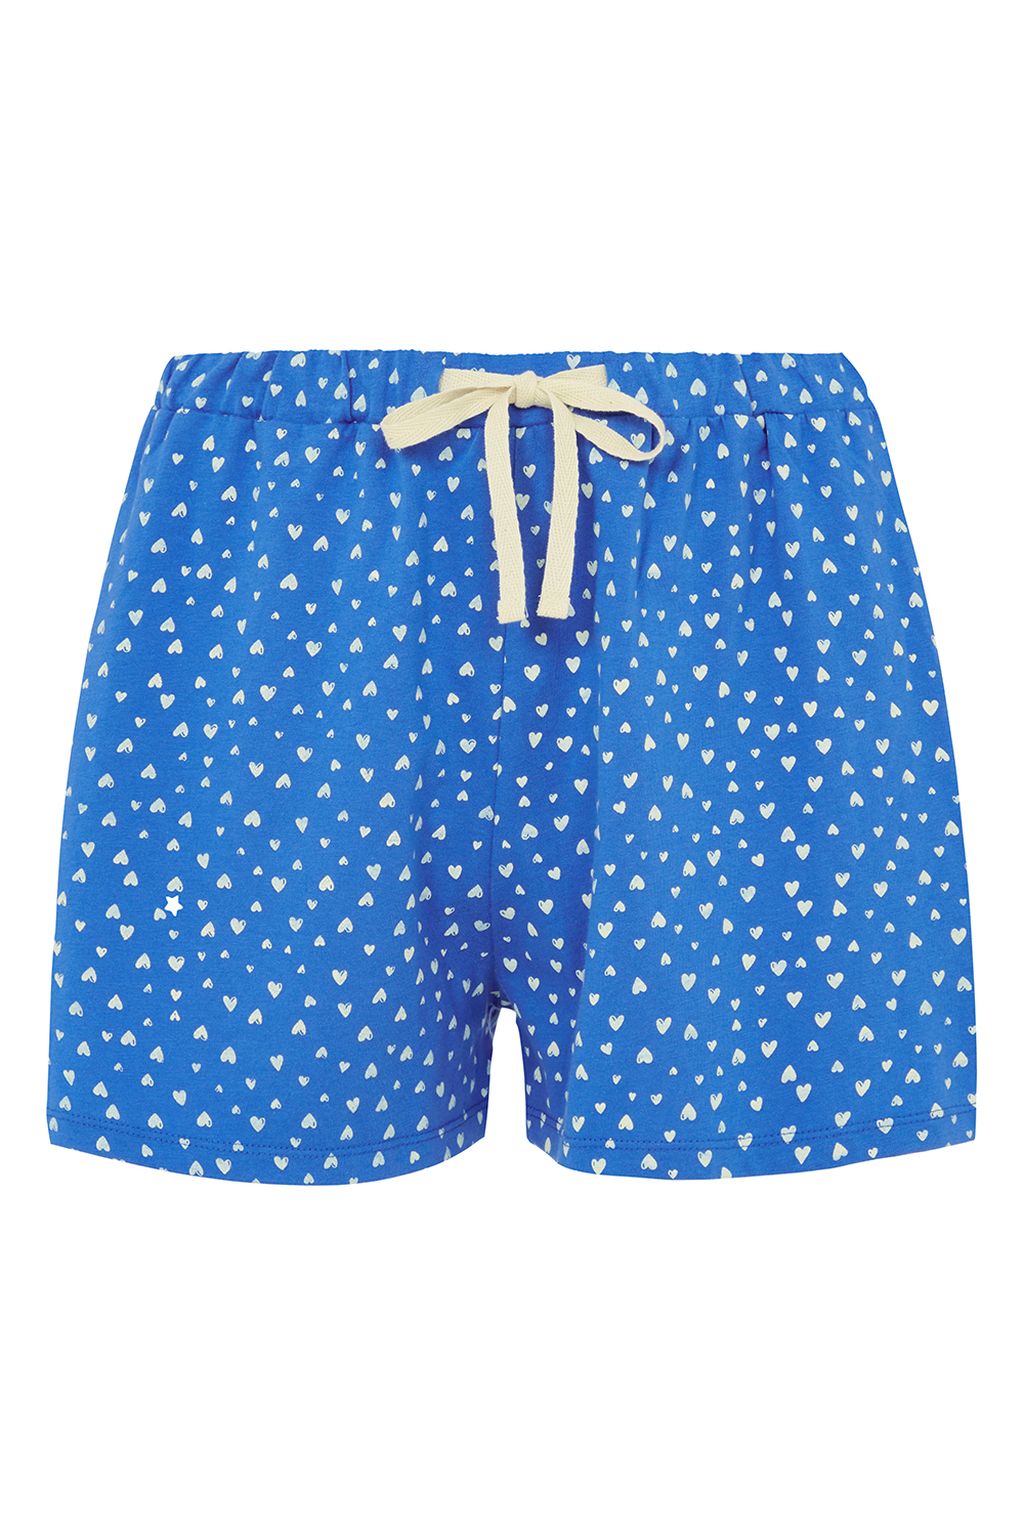 Hearts Pyjama Shorts Blue 10